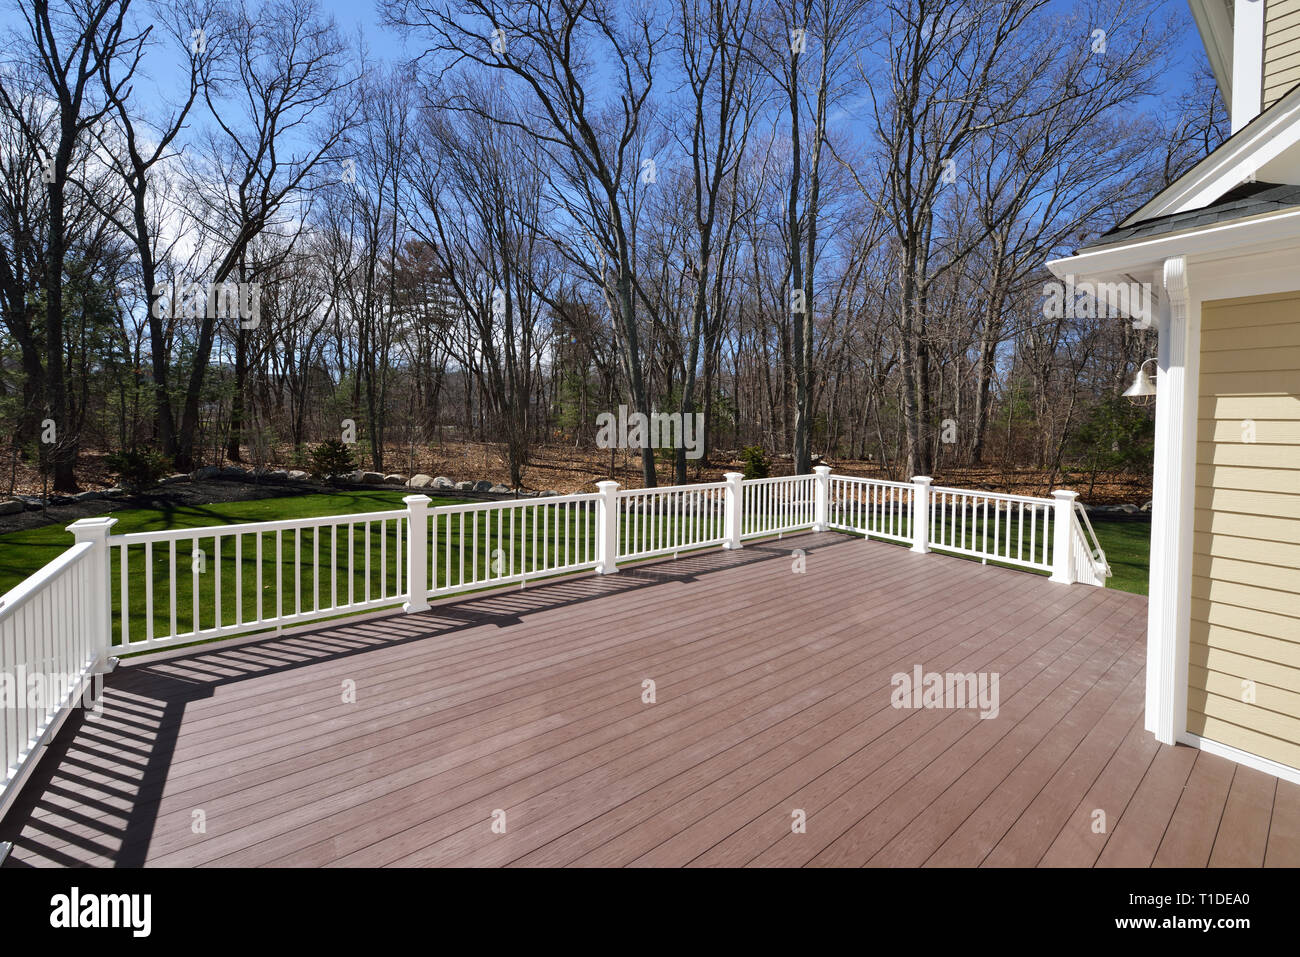 Nuovo backyard deck. In vinile bianco ringhiere e composito schede marrone. Ampio patio e giardino lo spazio con la vista verso il bosco. Foto Stock